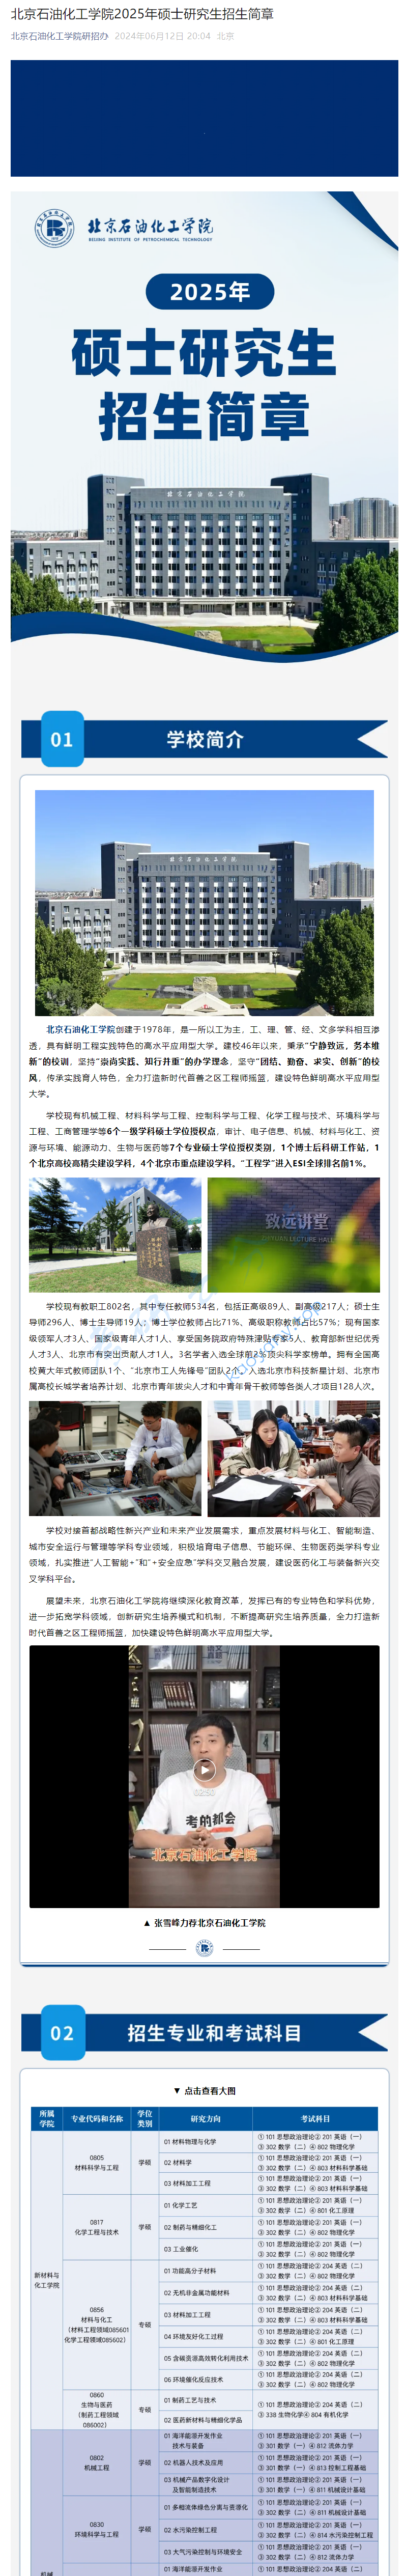 2025年北京石油化工学院招生简章,image.png,北京石油化工学院,第1张